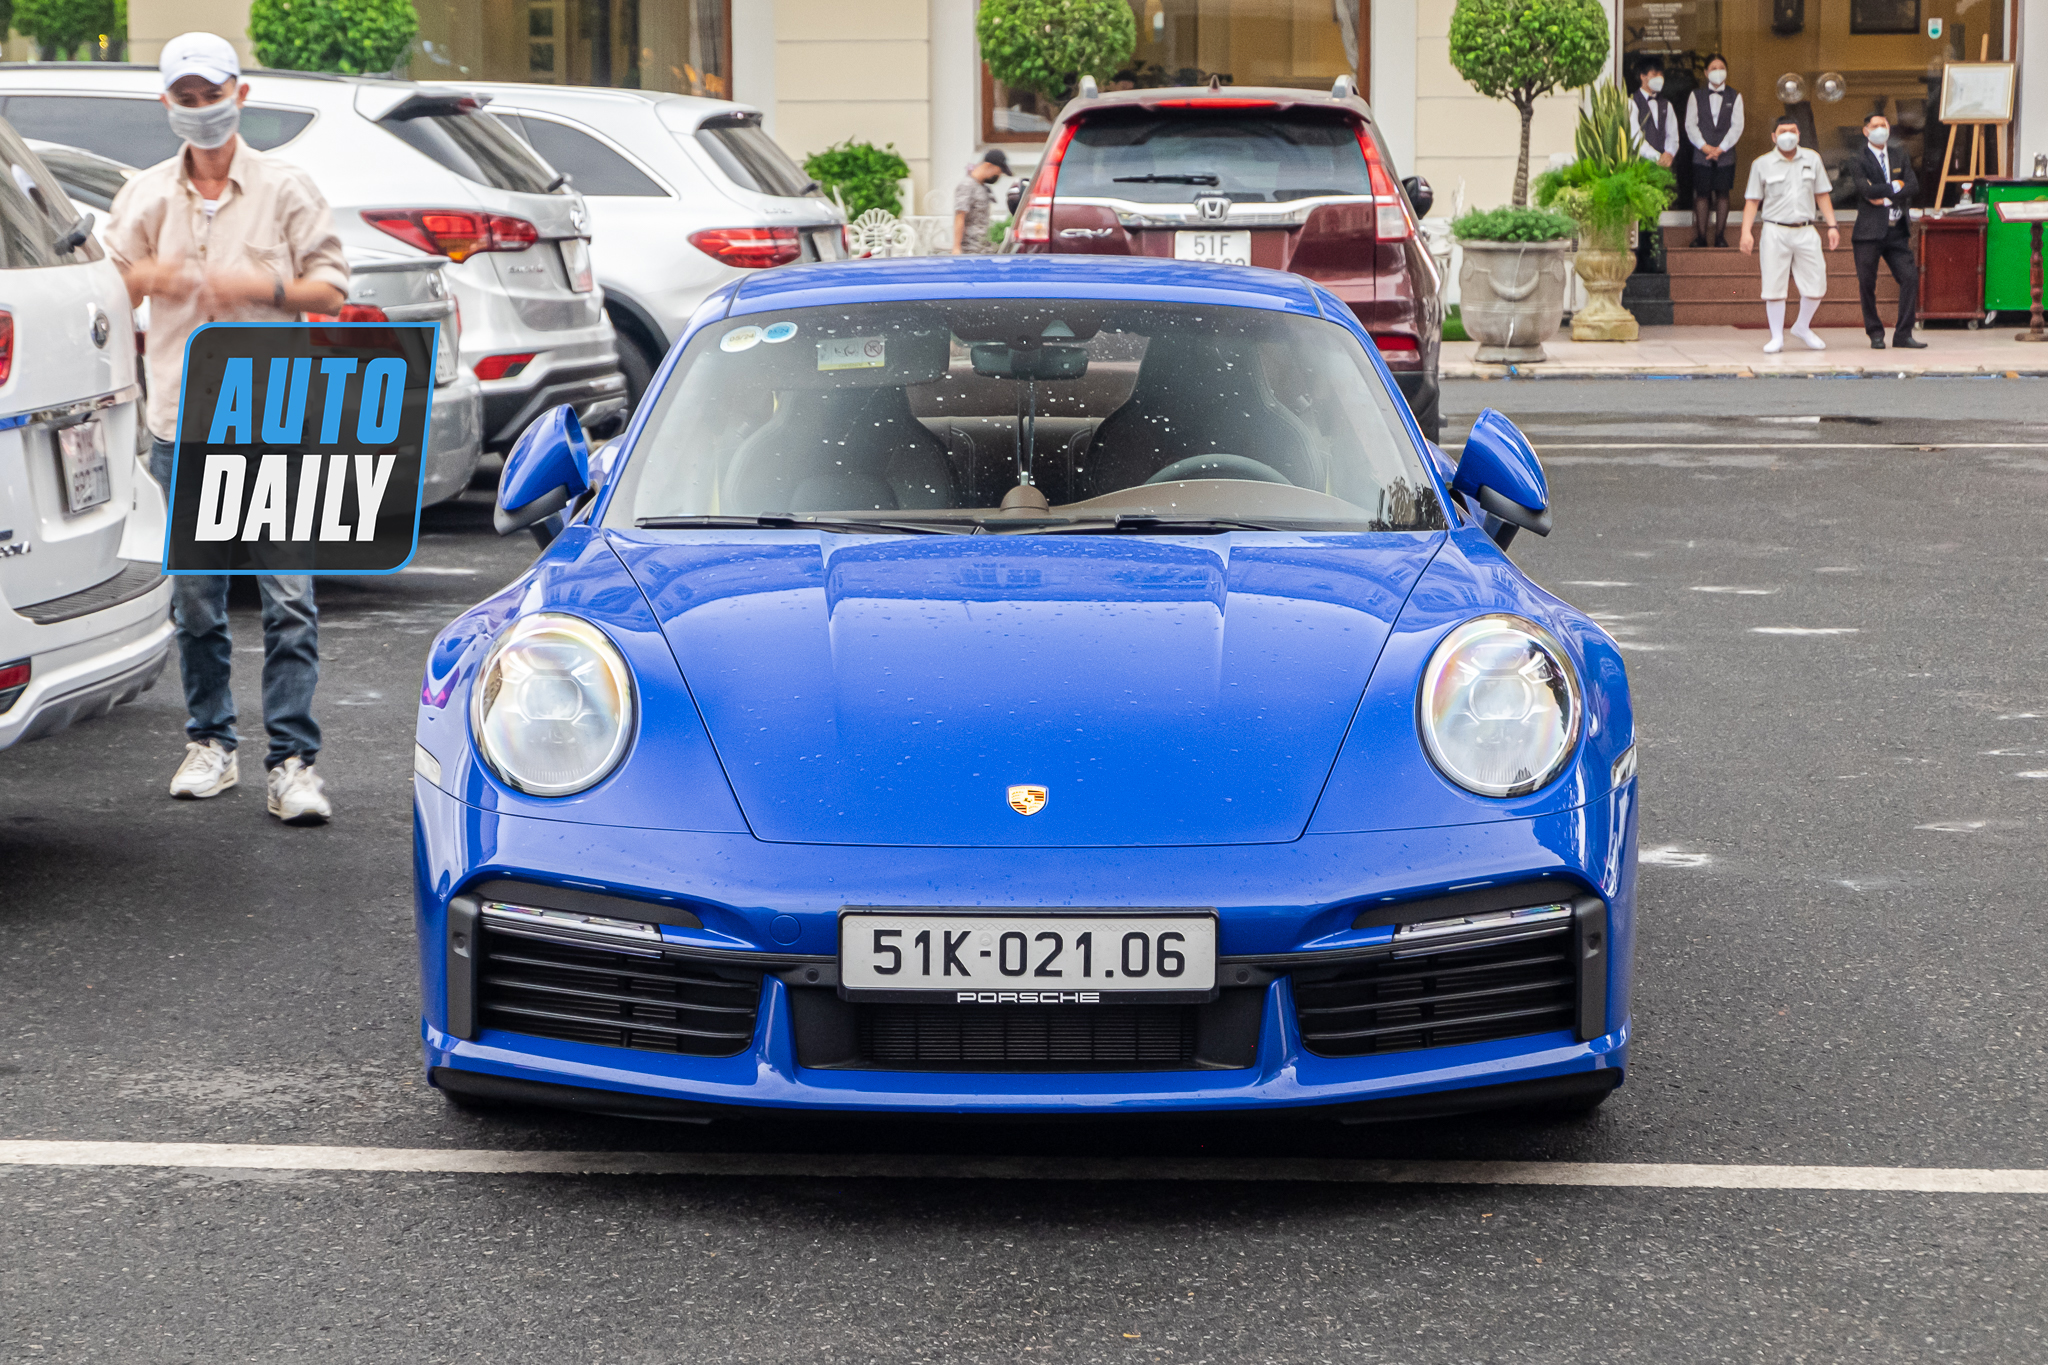 Cận cảnh Porsche 911 Turbo S thứ hai về Việt Nam, giá trị không dưới 16 tỷ đồng porsche-911-turbo-s-thu-hai-viet-nam-autodaily-3.JPG